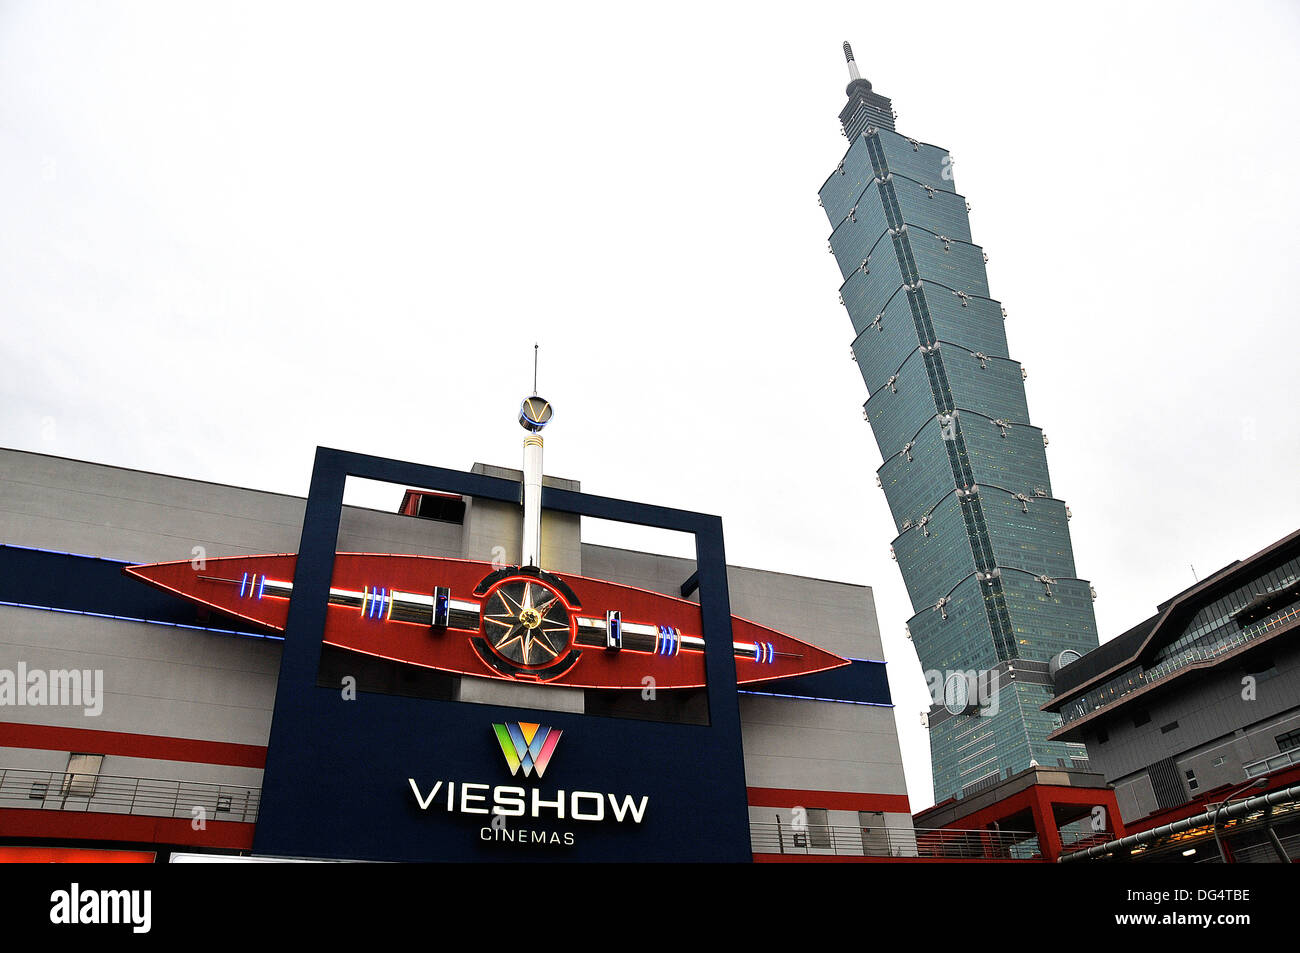 Vieshow cinemas and 101 tower Taipei Taiwan Stock Photo